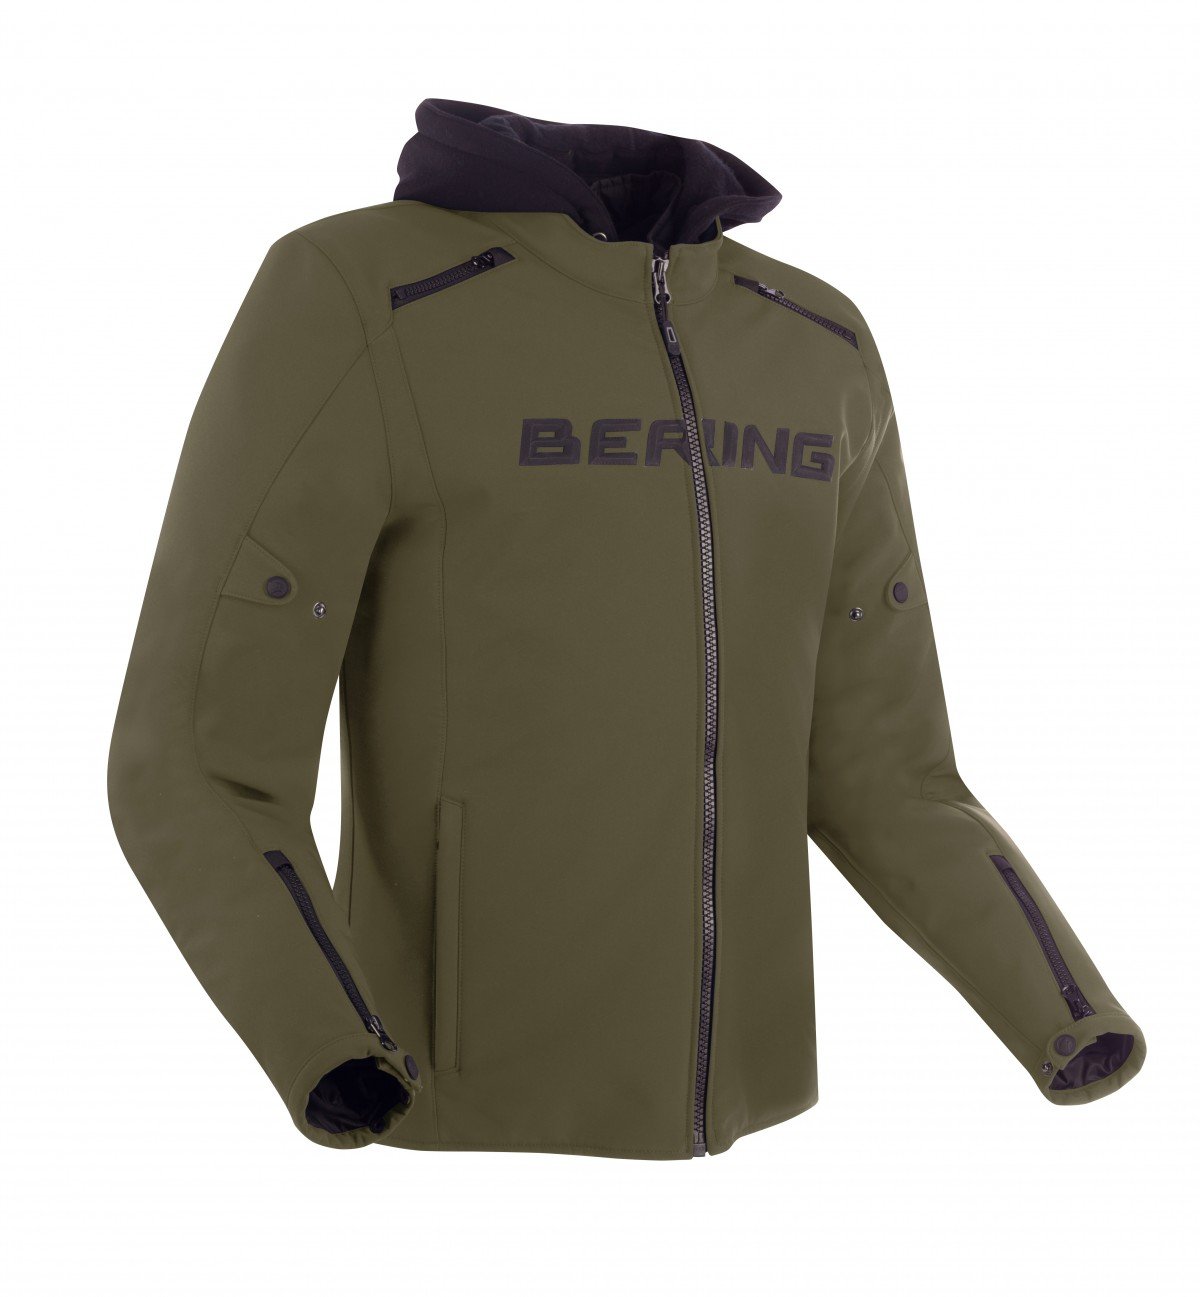 Image of Bering Elite Jacket Khaki Size M ID 3660815170311